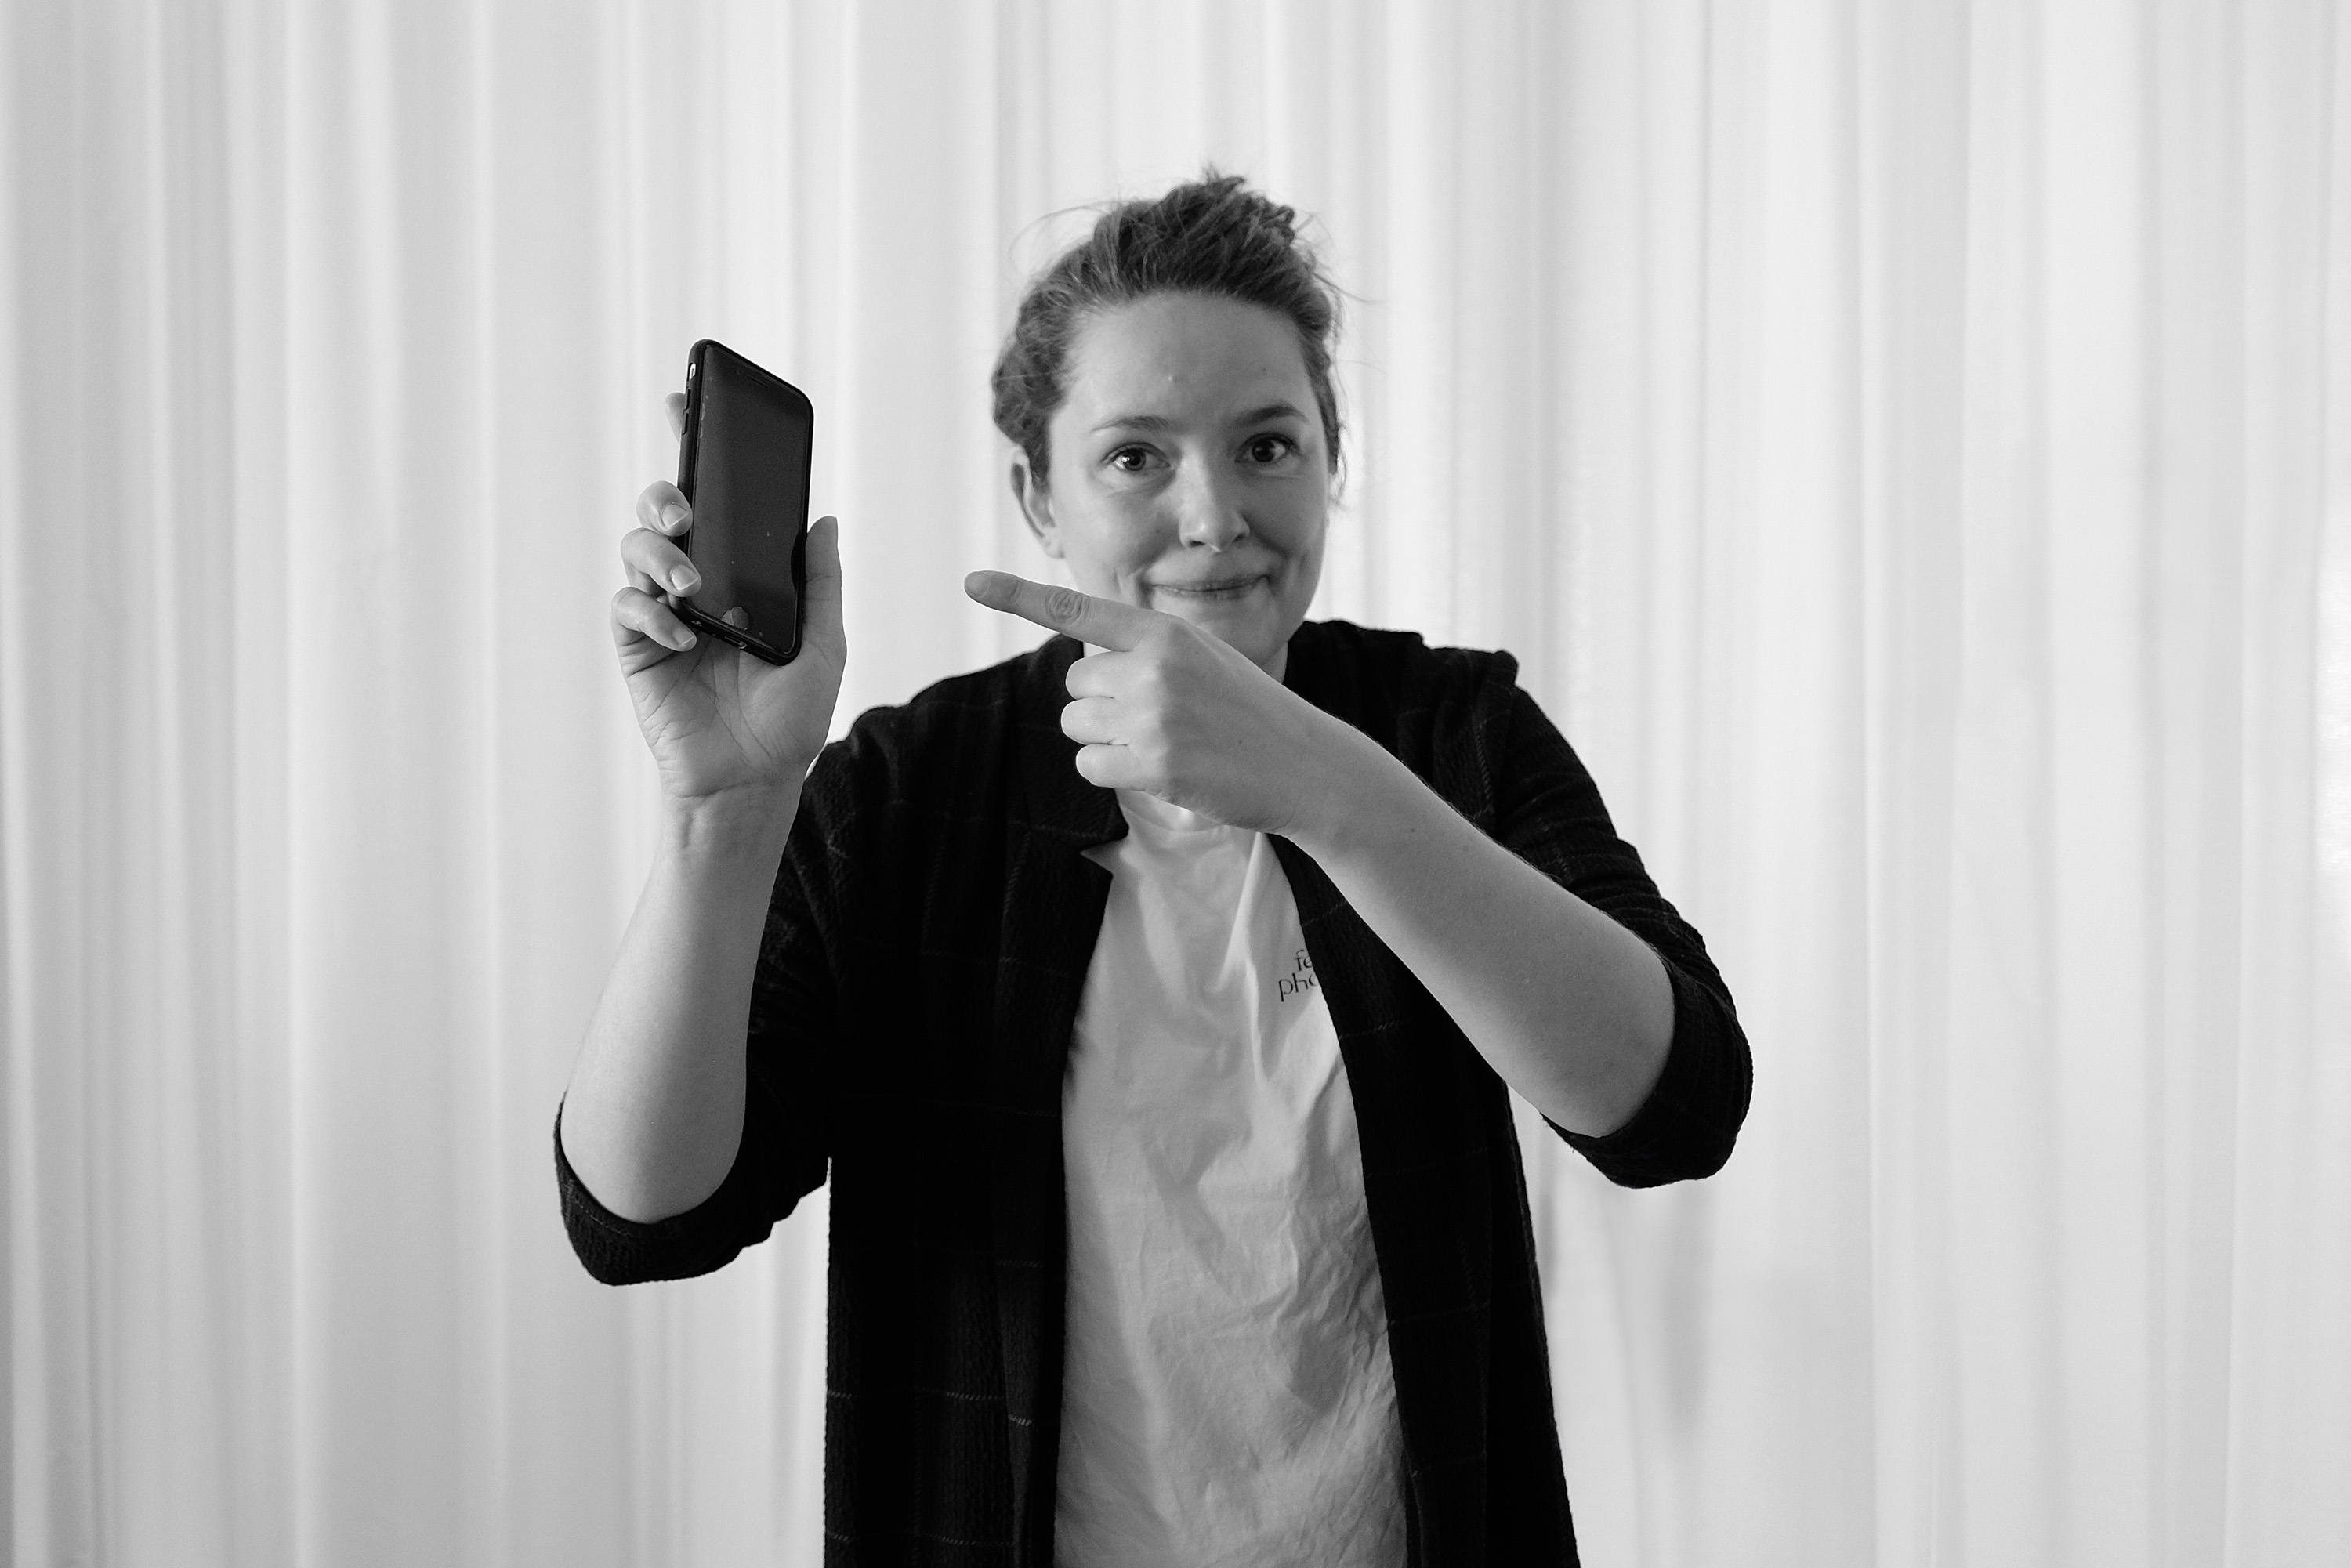 Schwarz-weiß Fotografie von Alex, die mit ihrem Finger auf ihr Handy zeigt